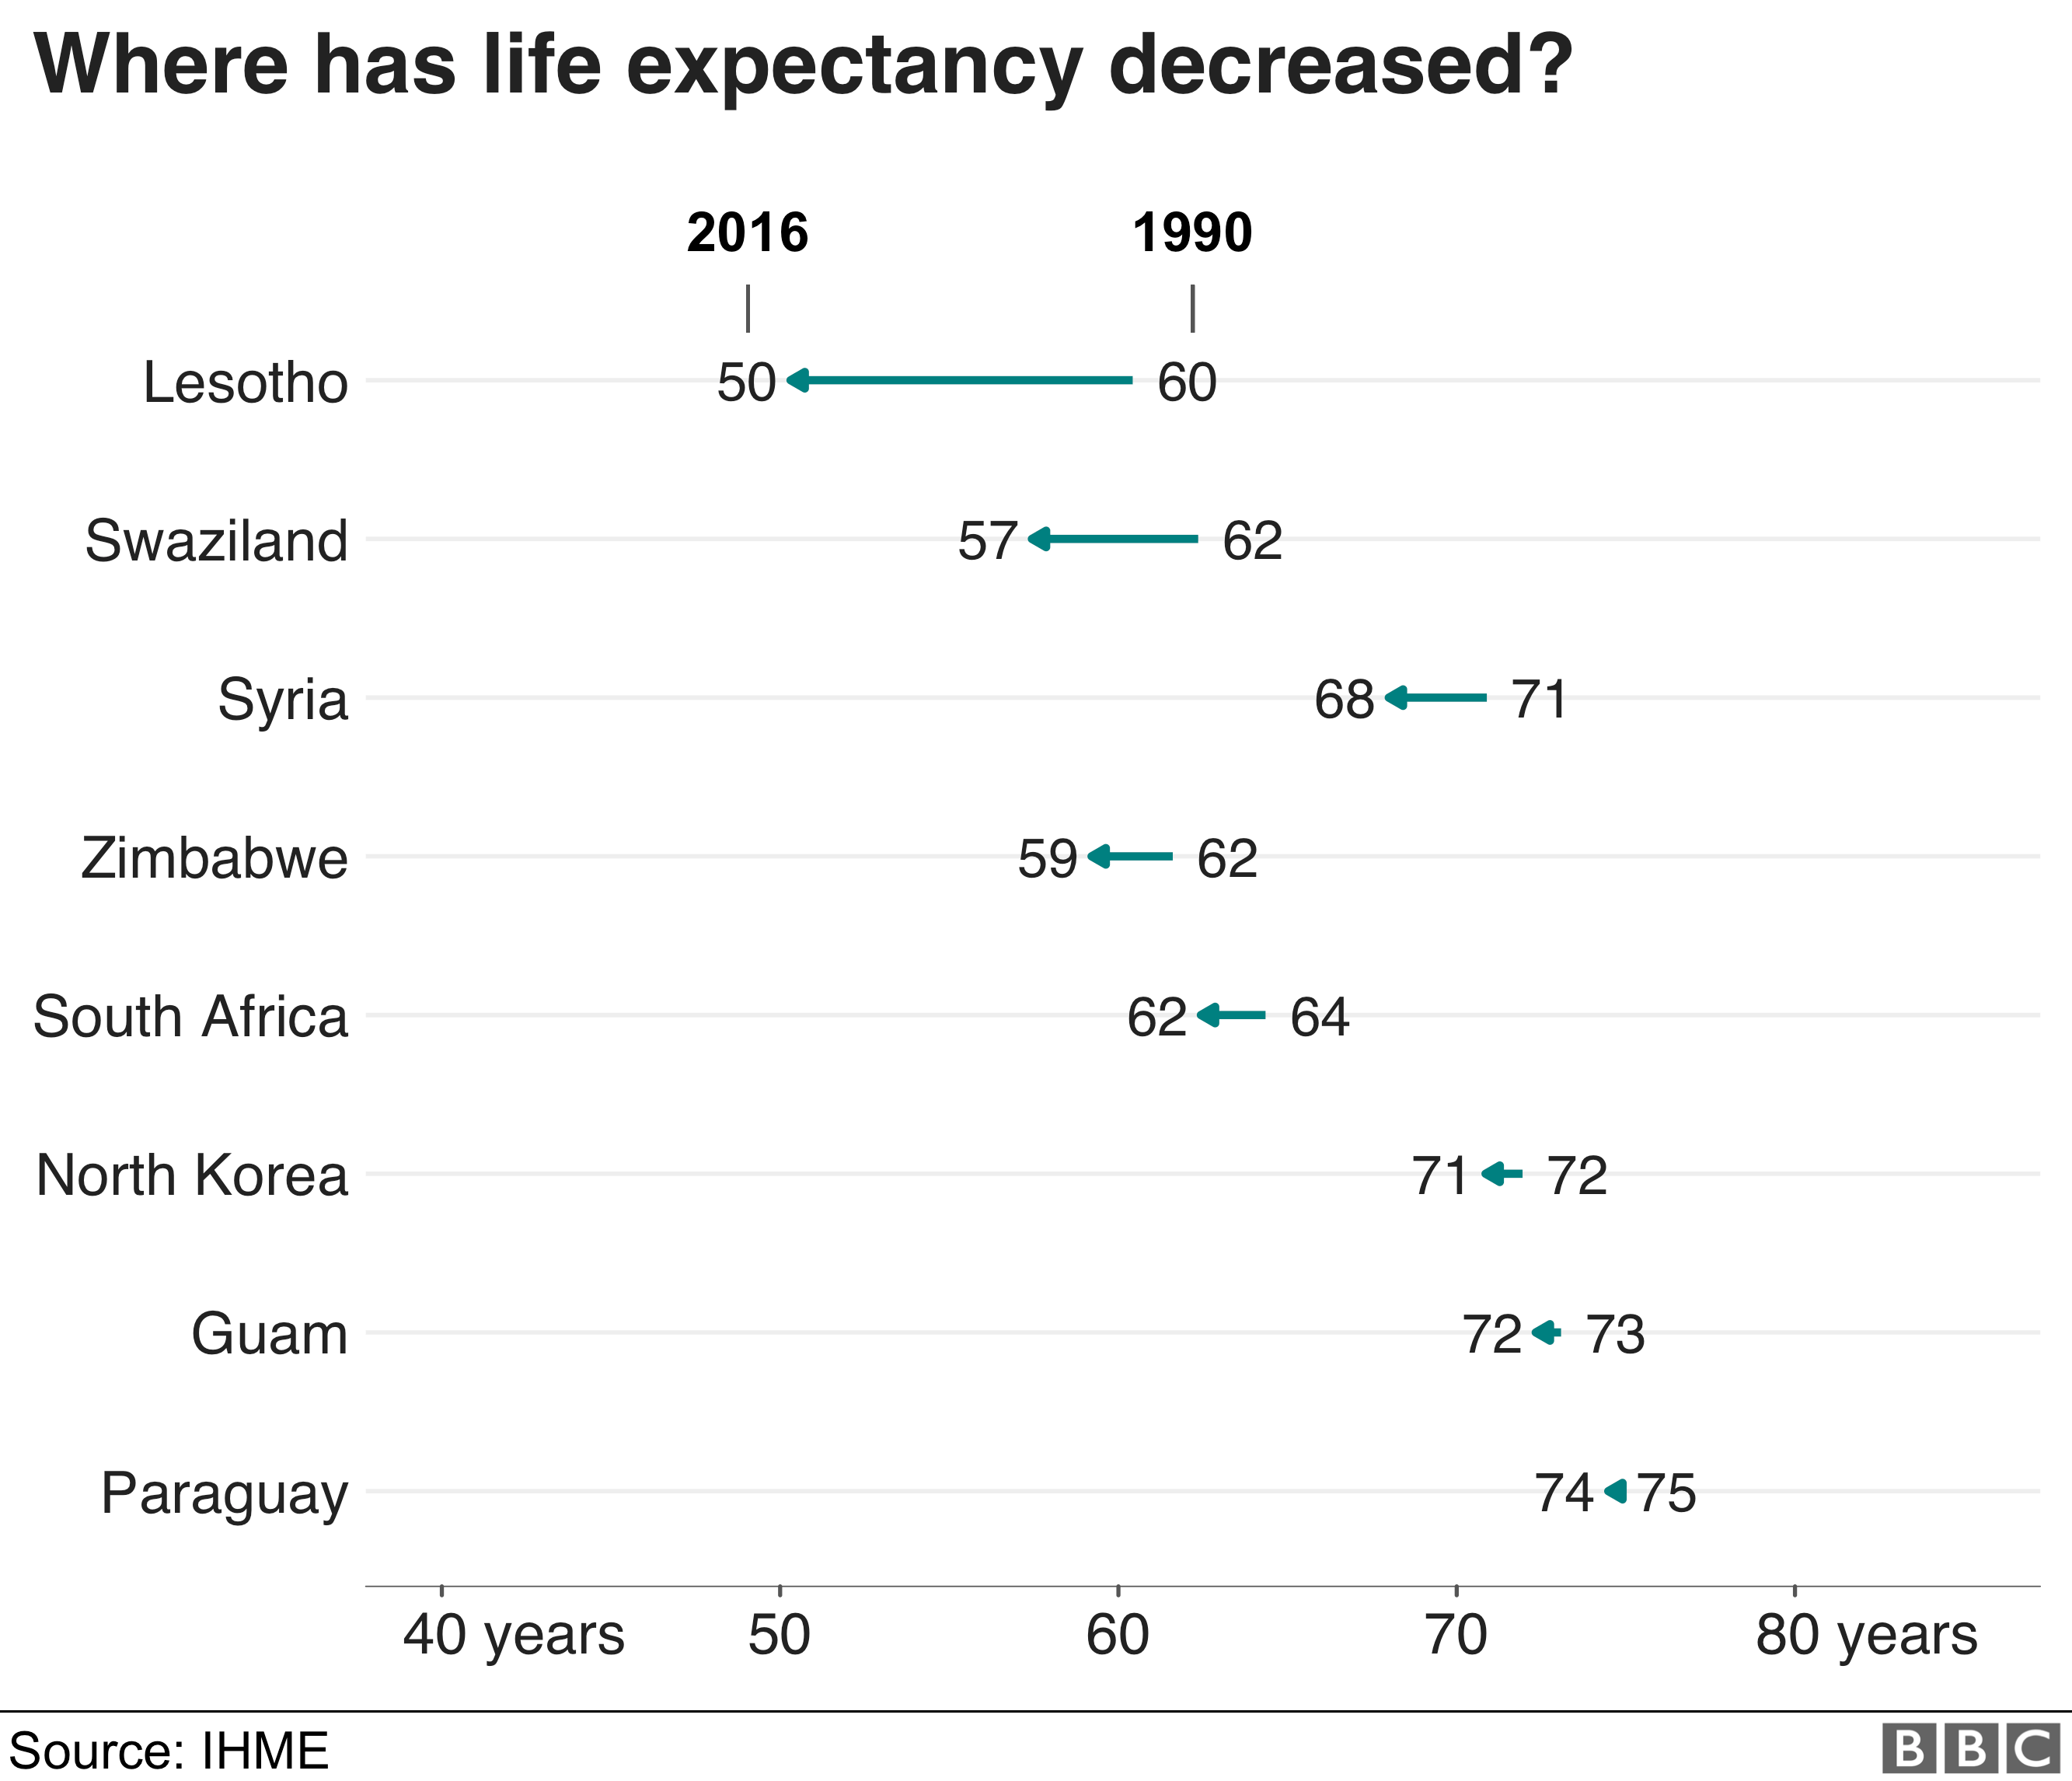 Ожидаемая продолжительность жизни снизилась больше всего с 1990 года в Лесото, где она снизилась на 10 лет с 60 до 50